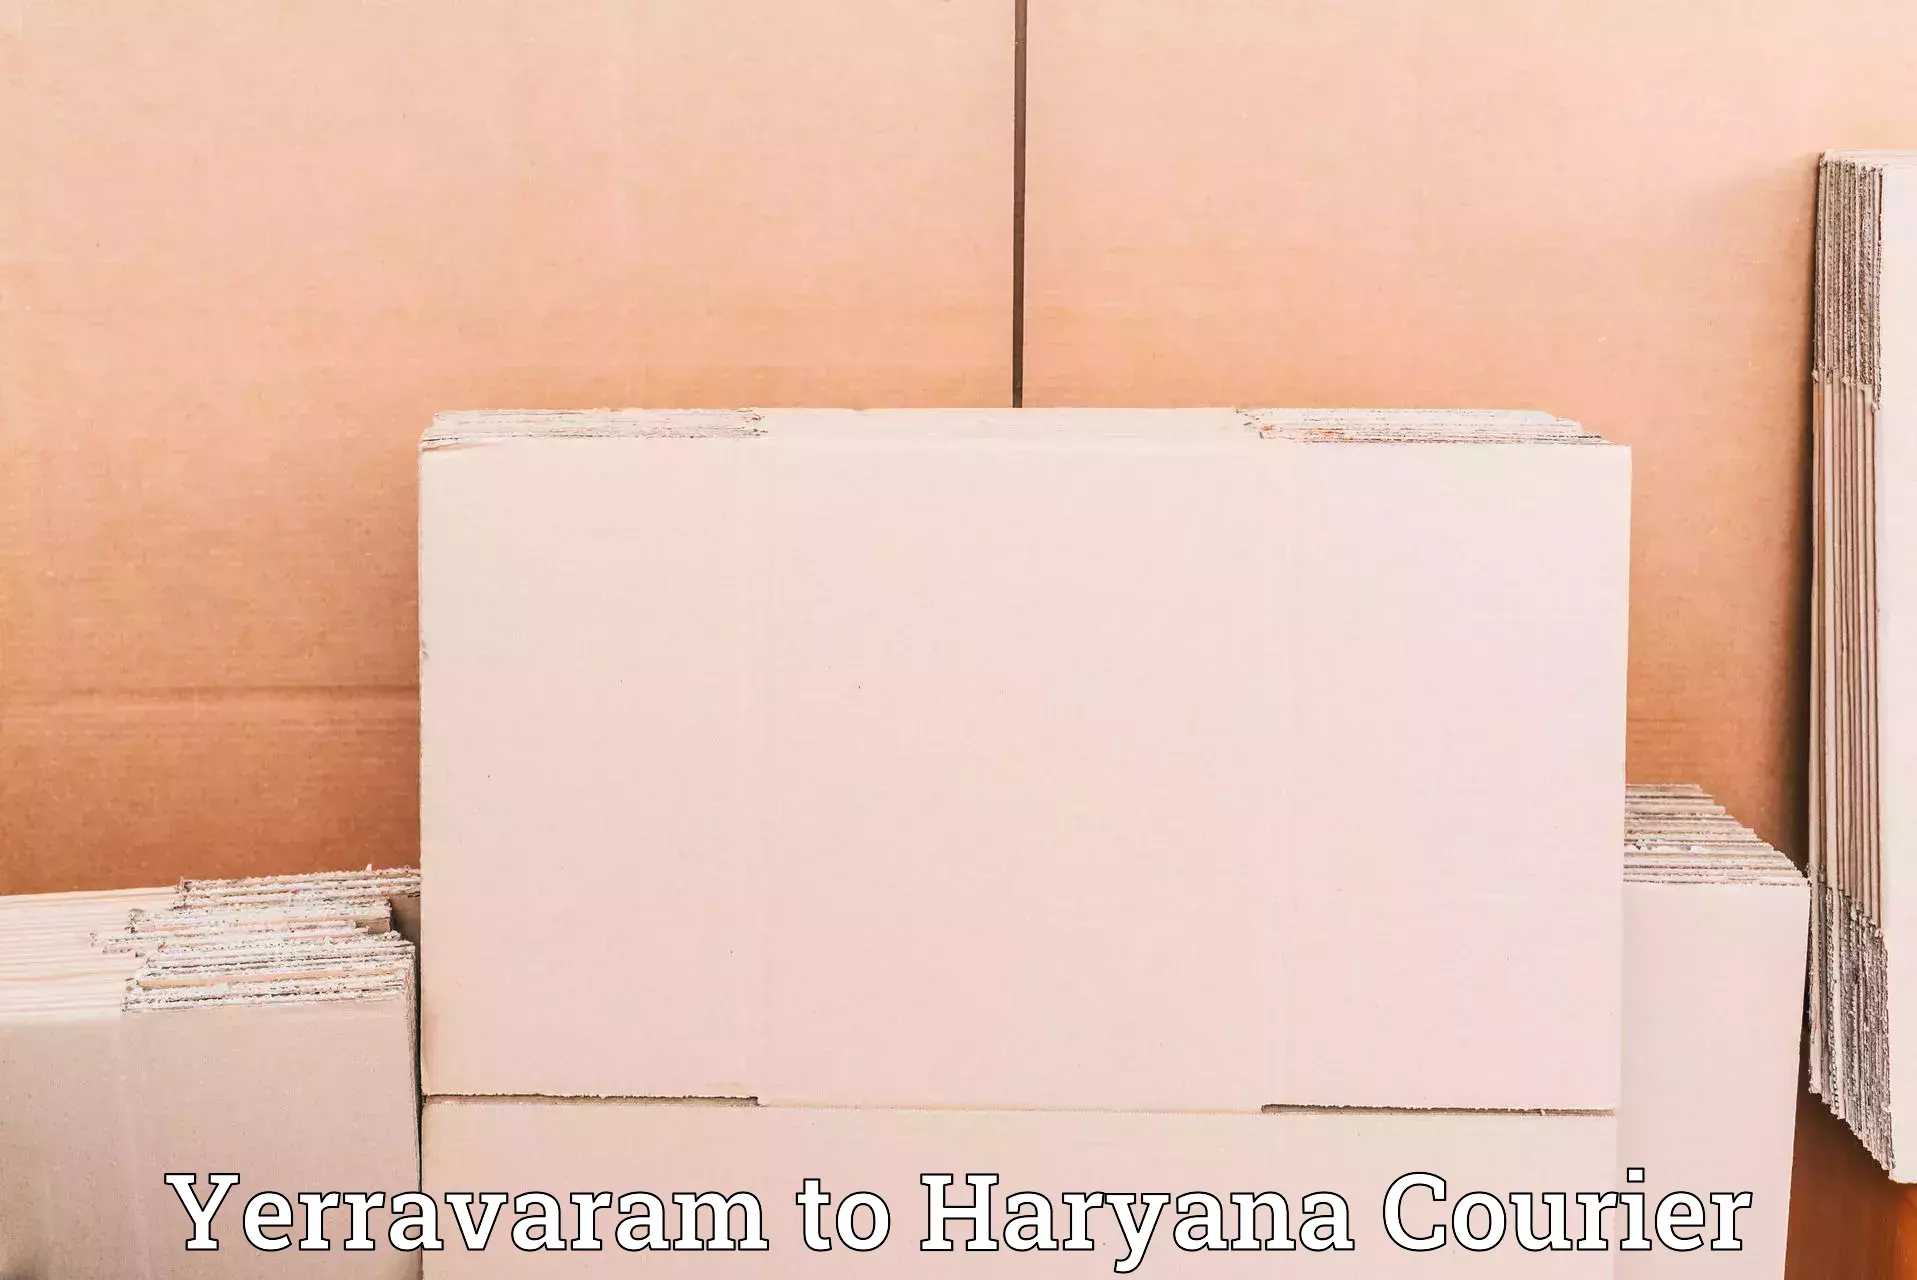 High-capacity courier solutions Yerravaram to Rewari